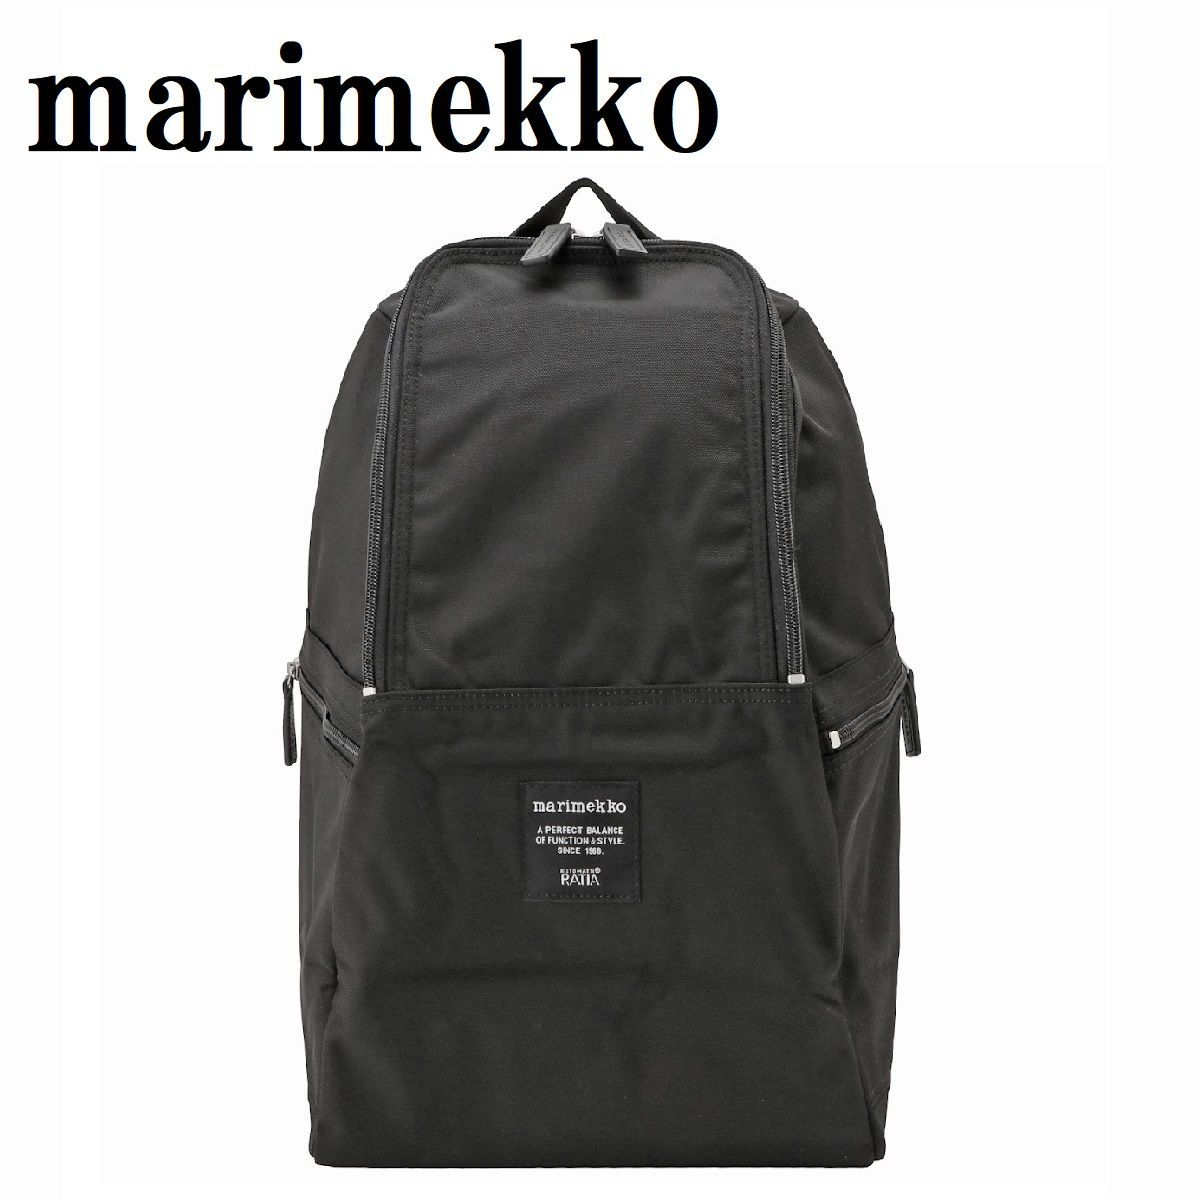 marimekko マリメッコ 039972 999 メトロ バックパック リュックサック レディース メンズ ブラック